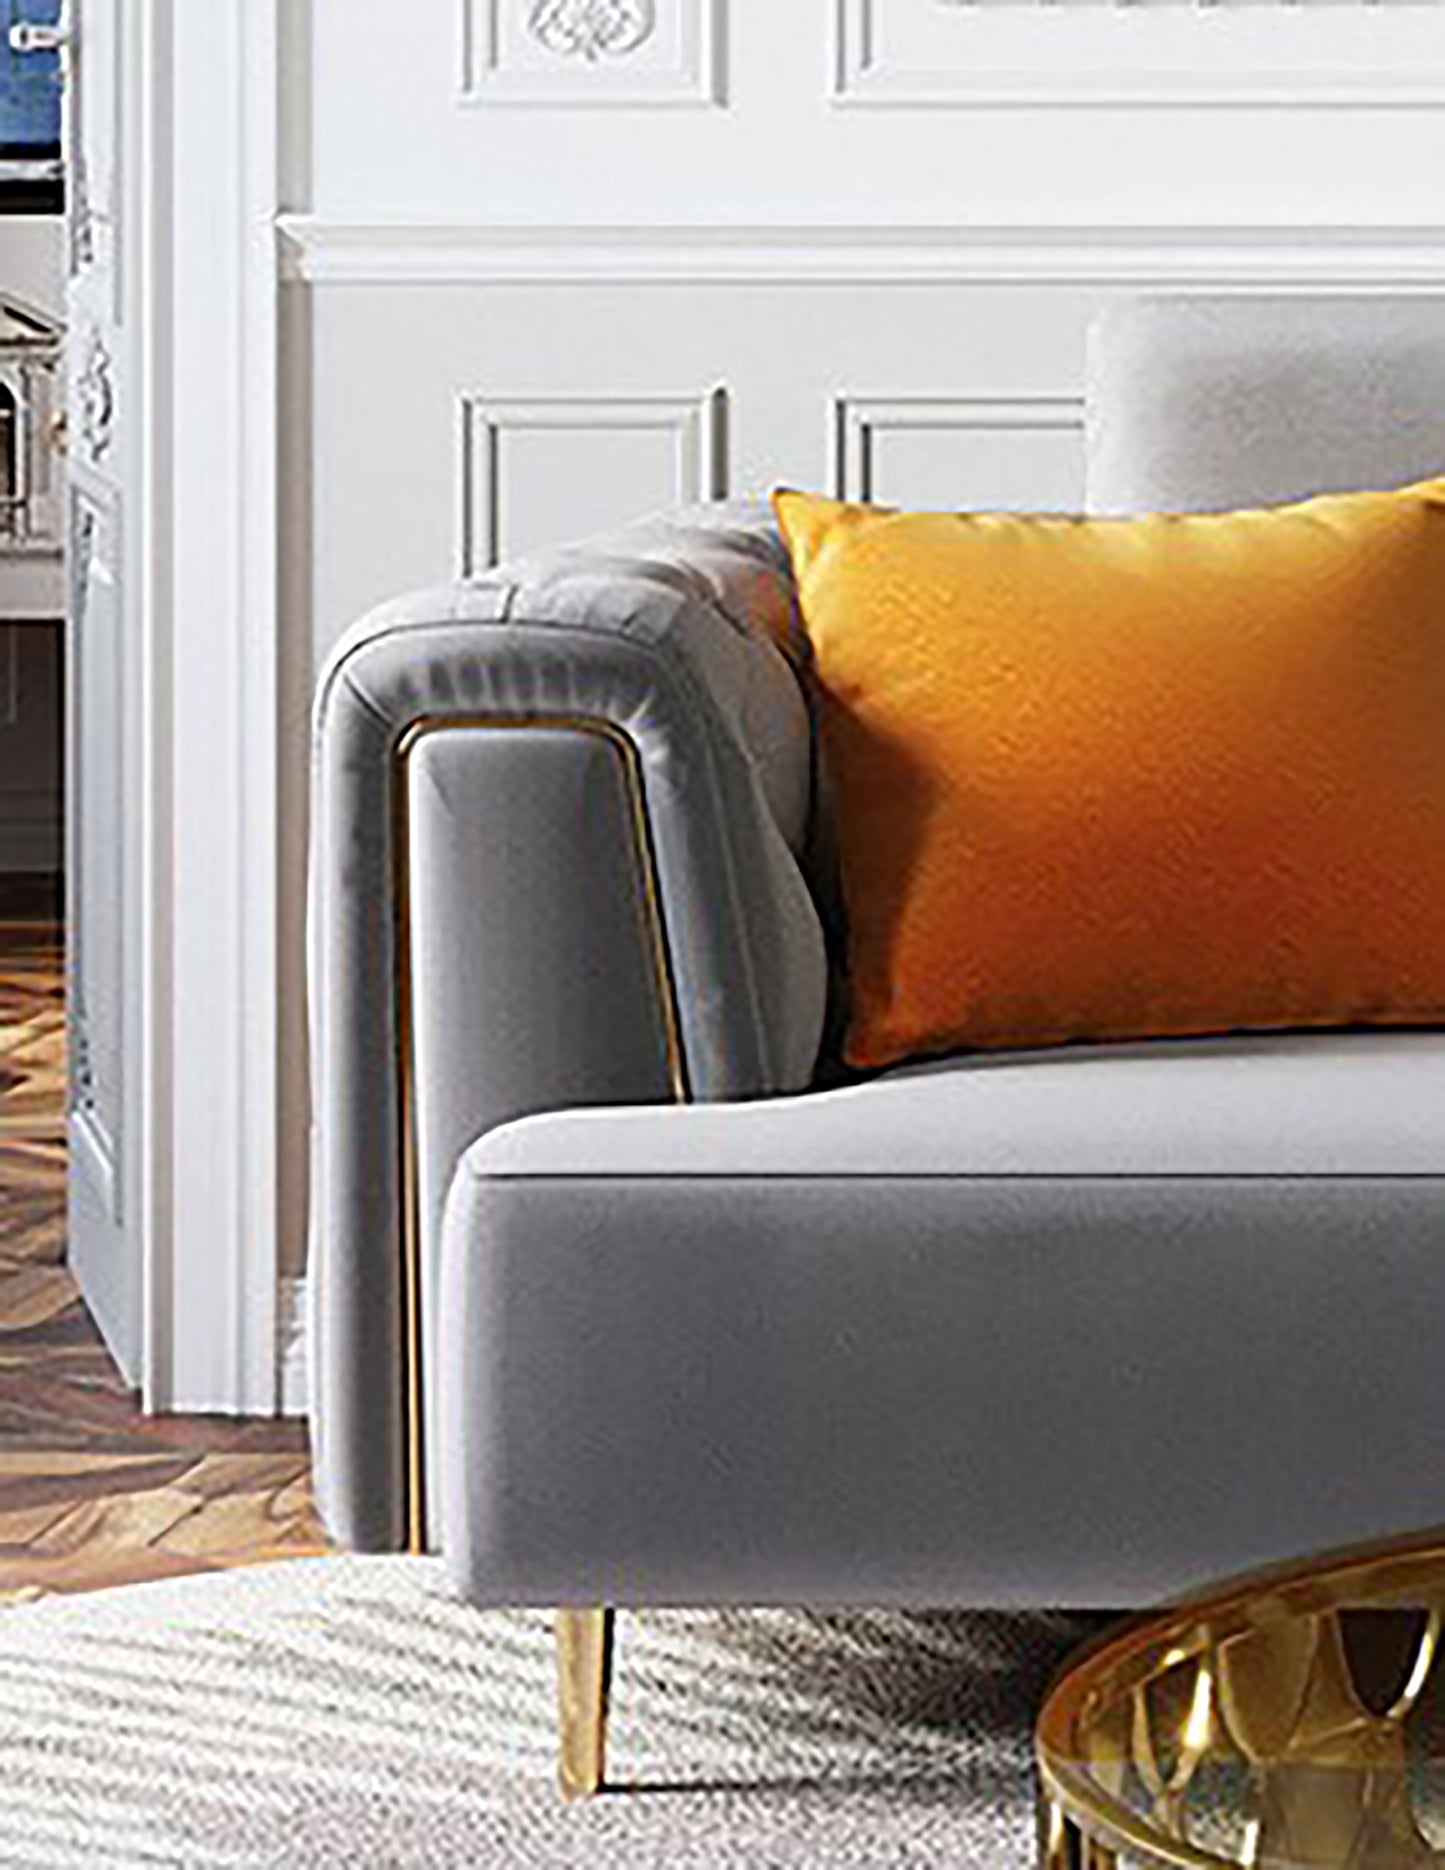 furniture-sofa-cushions-cover-pillow-armchair